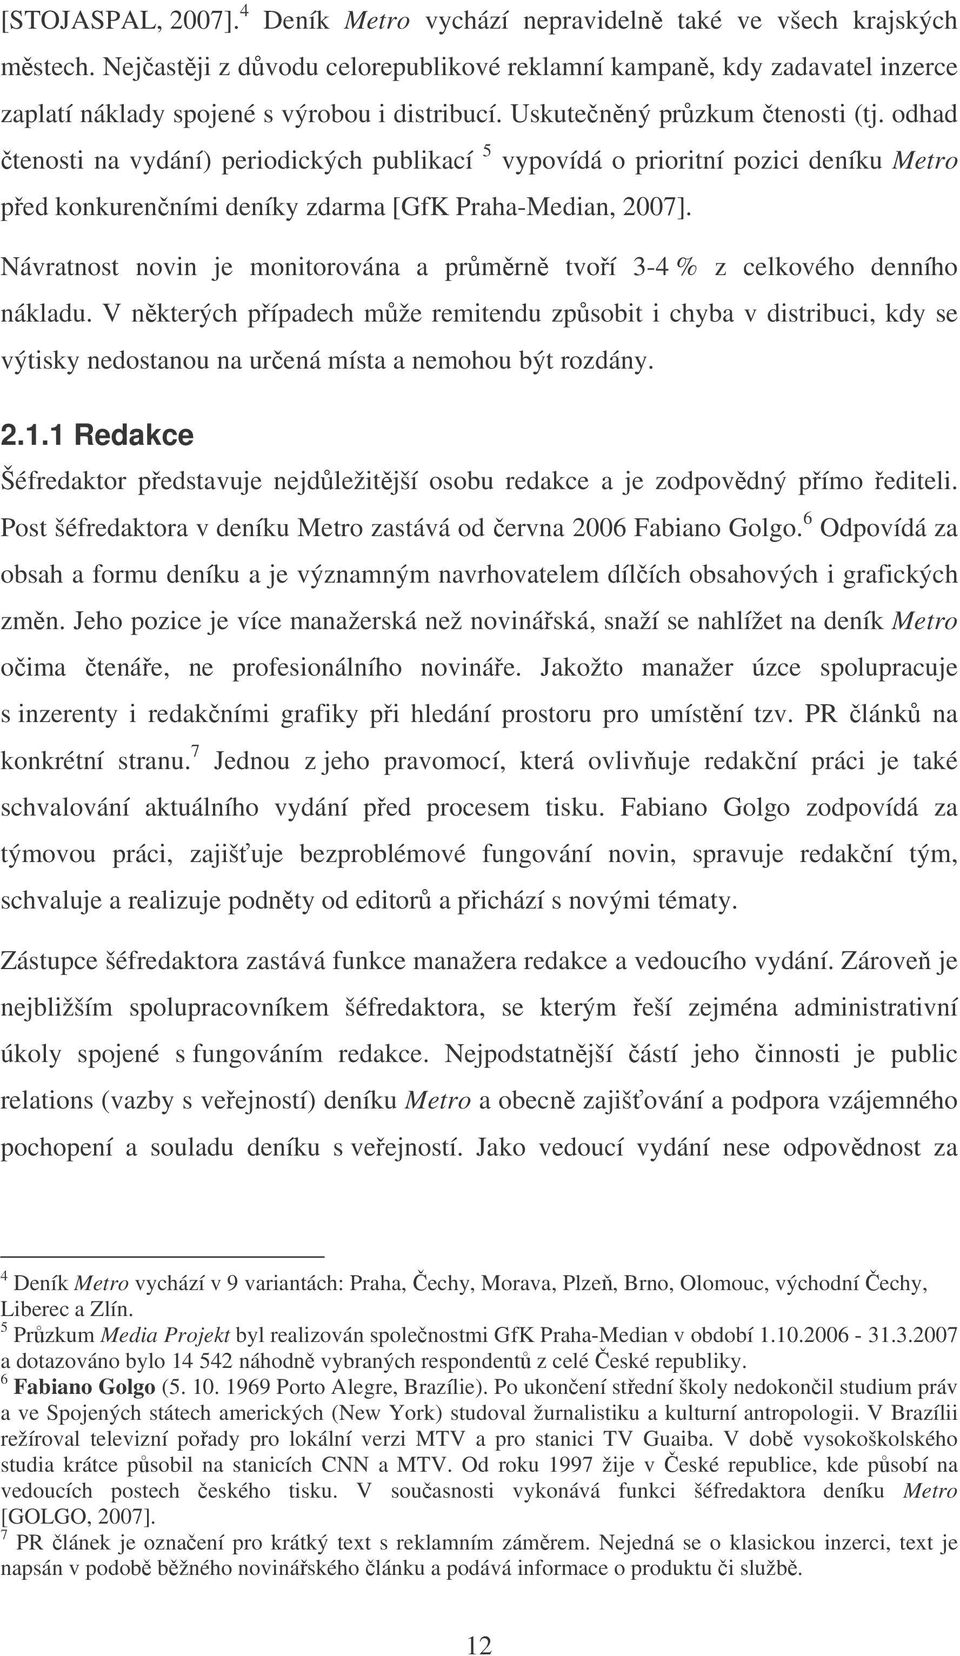 odhad tenosti na vydání) periodických publikací 5 vypovídá o prioritní pozici deníku Metro ped konkurenními deníky zdarma [GfK Praha-Median, 2007].